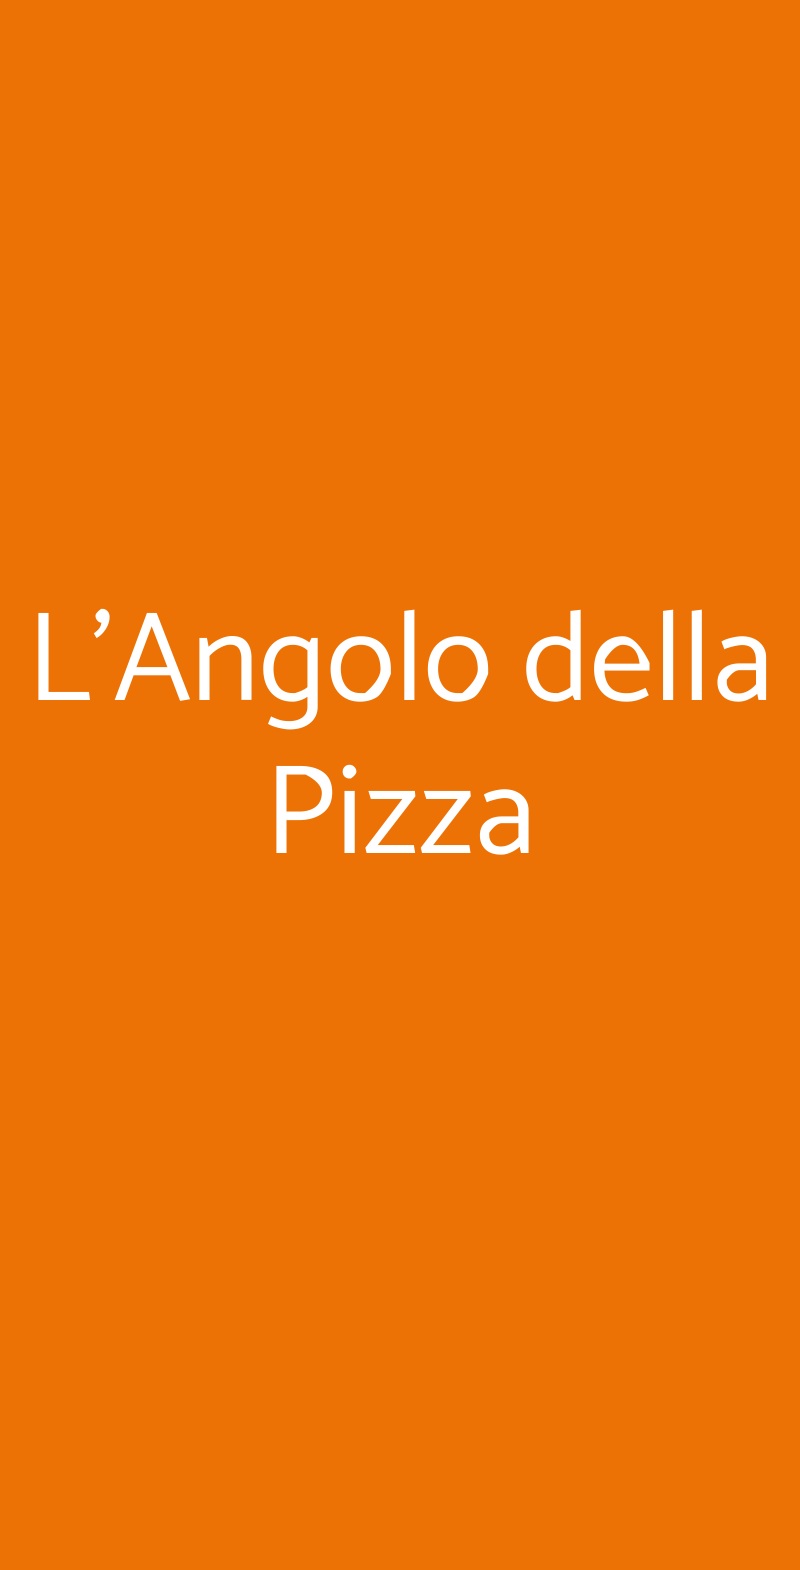 L'Angolo della Pizza Marotta menù 1 pagina